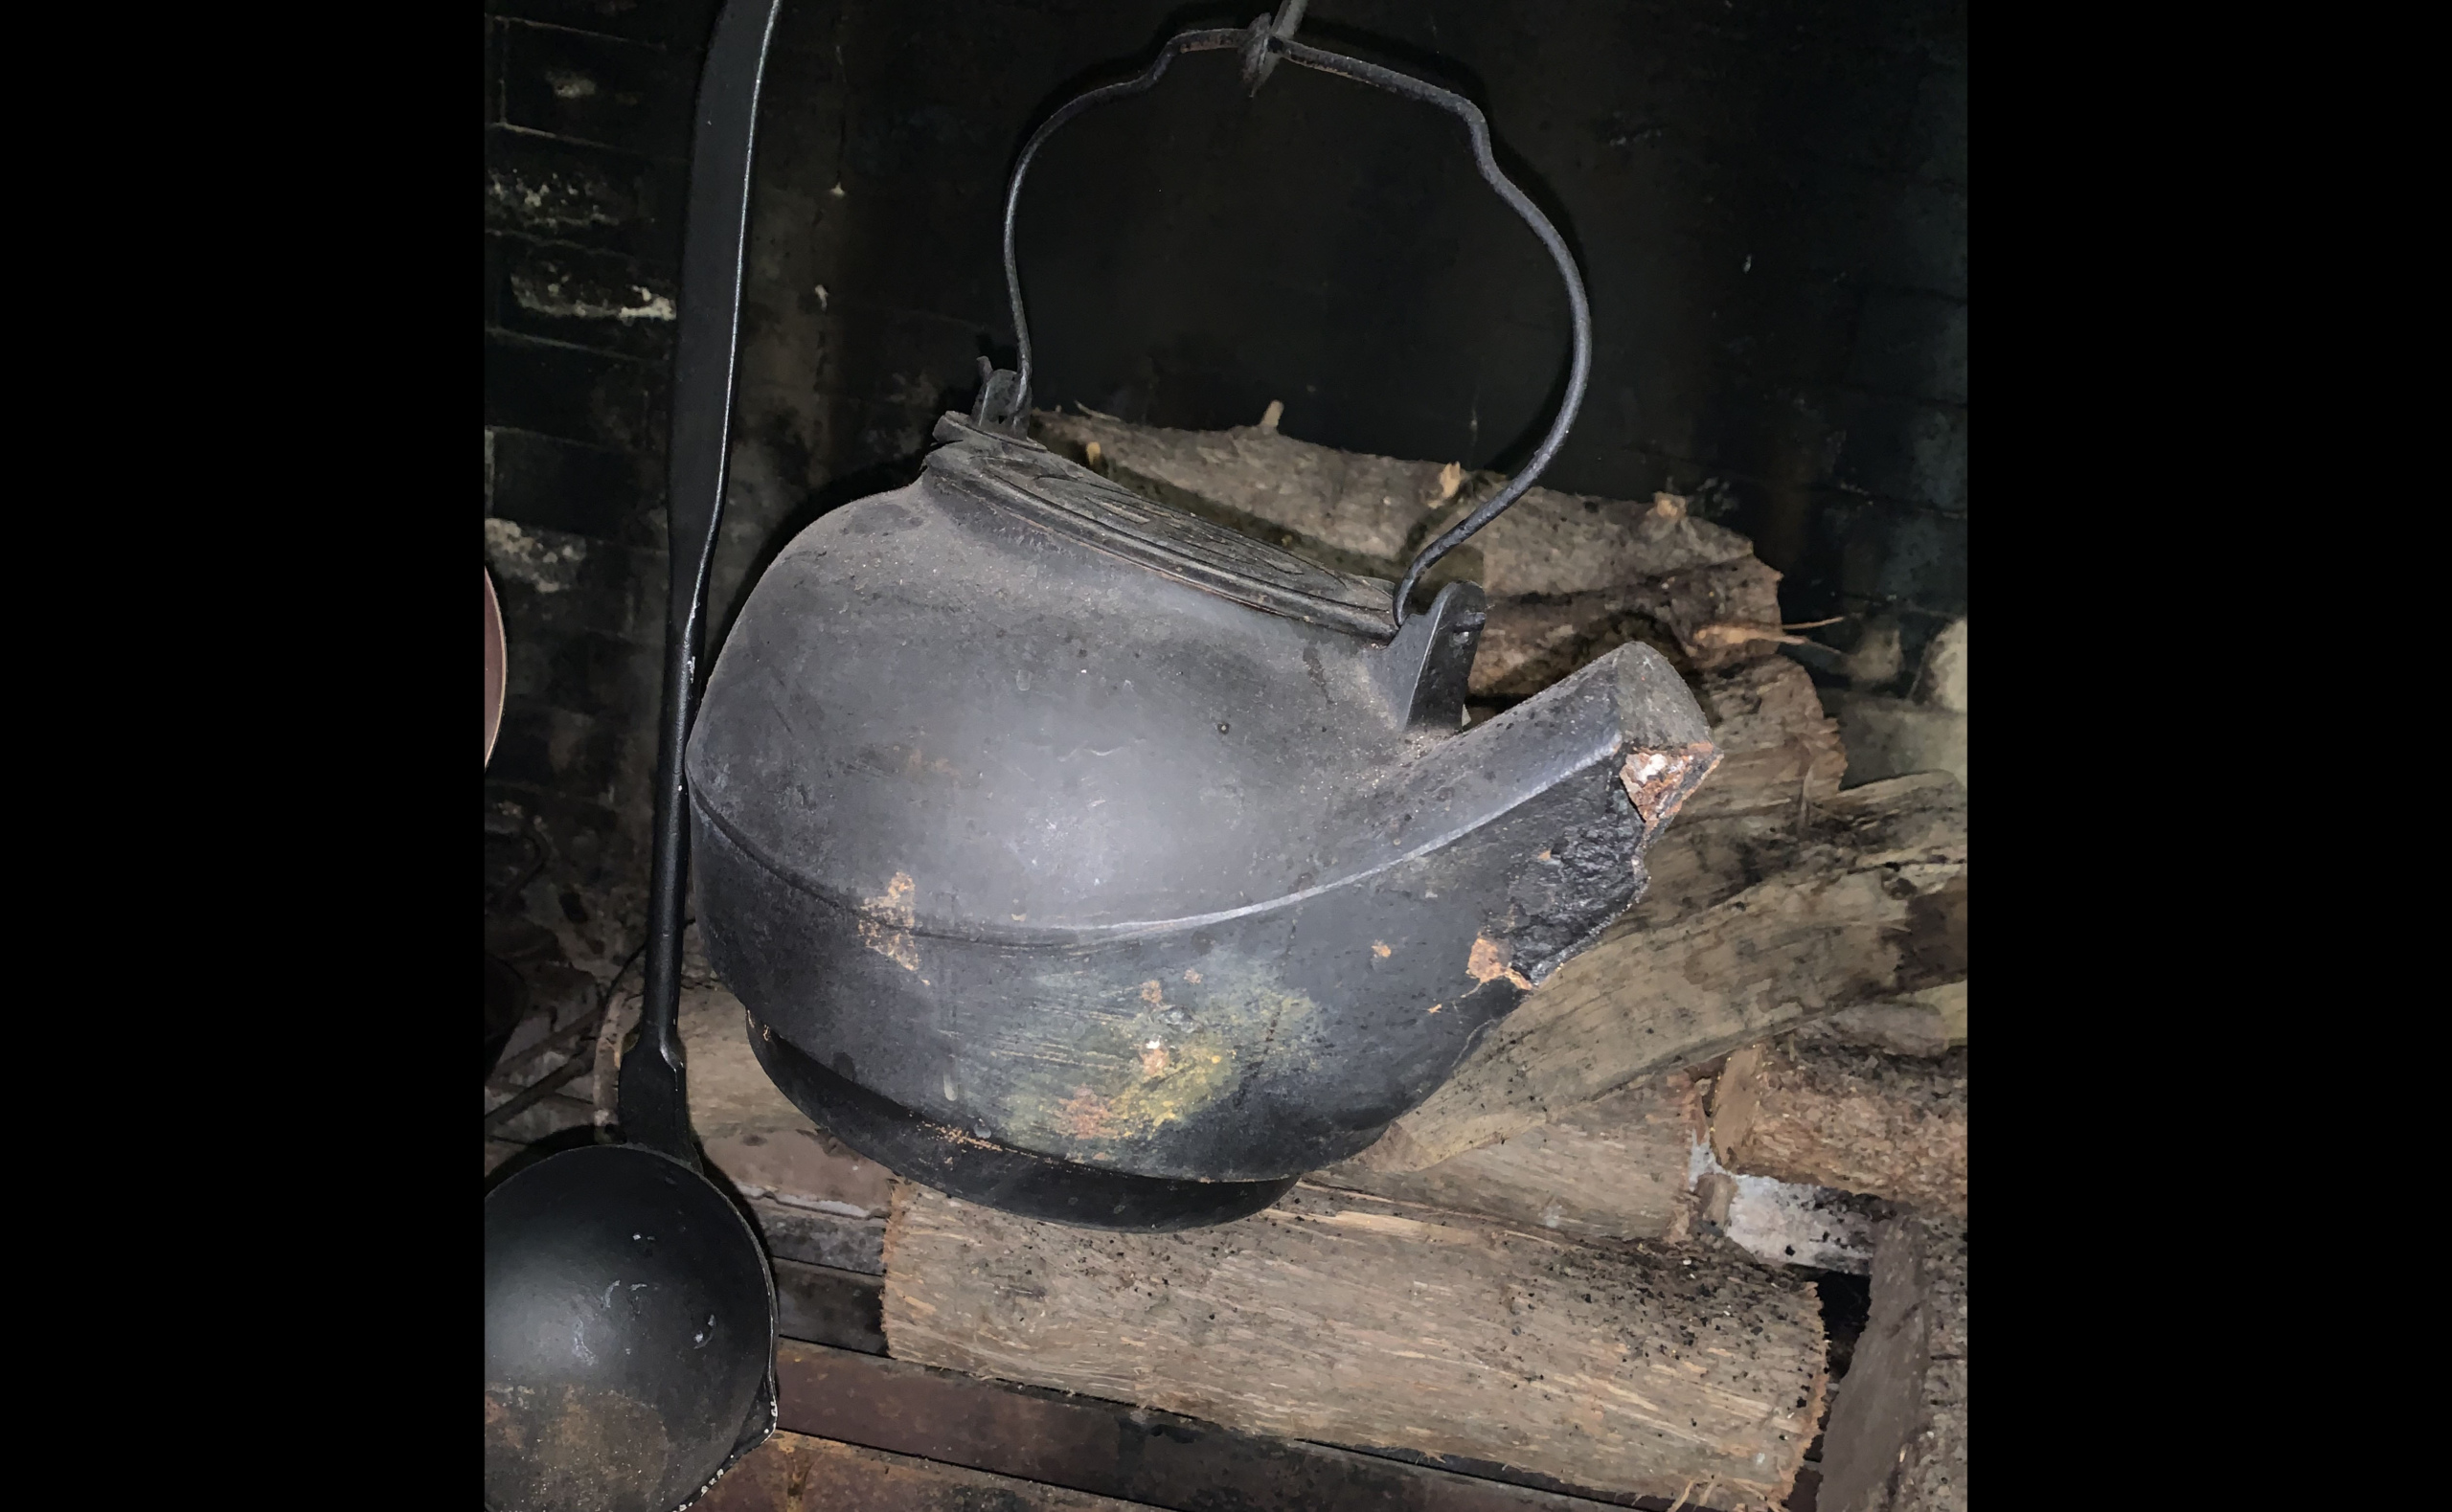 Copper kettle over an open fire in winter. Boiling kettle on